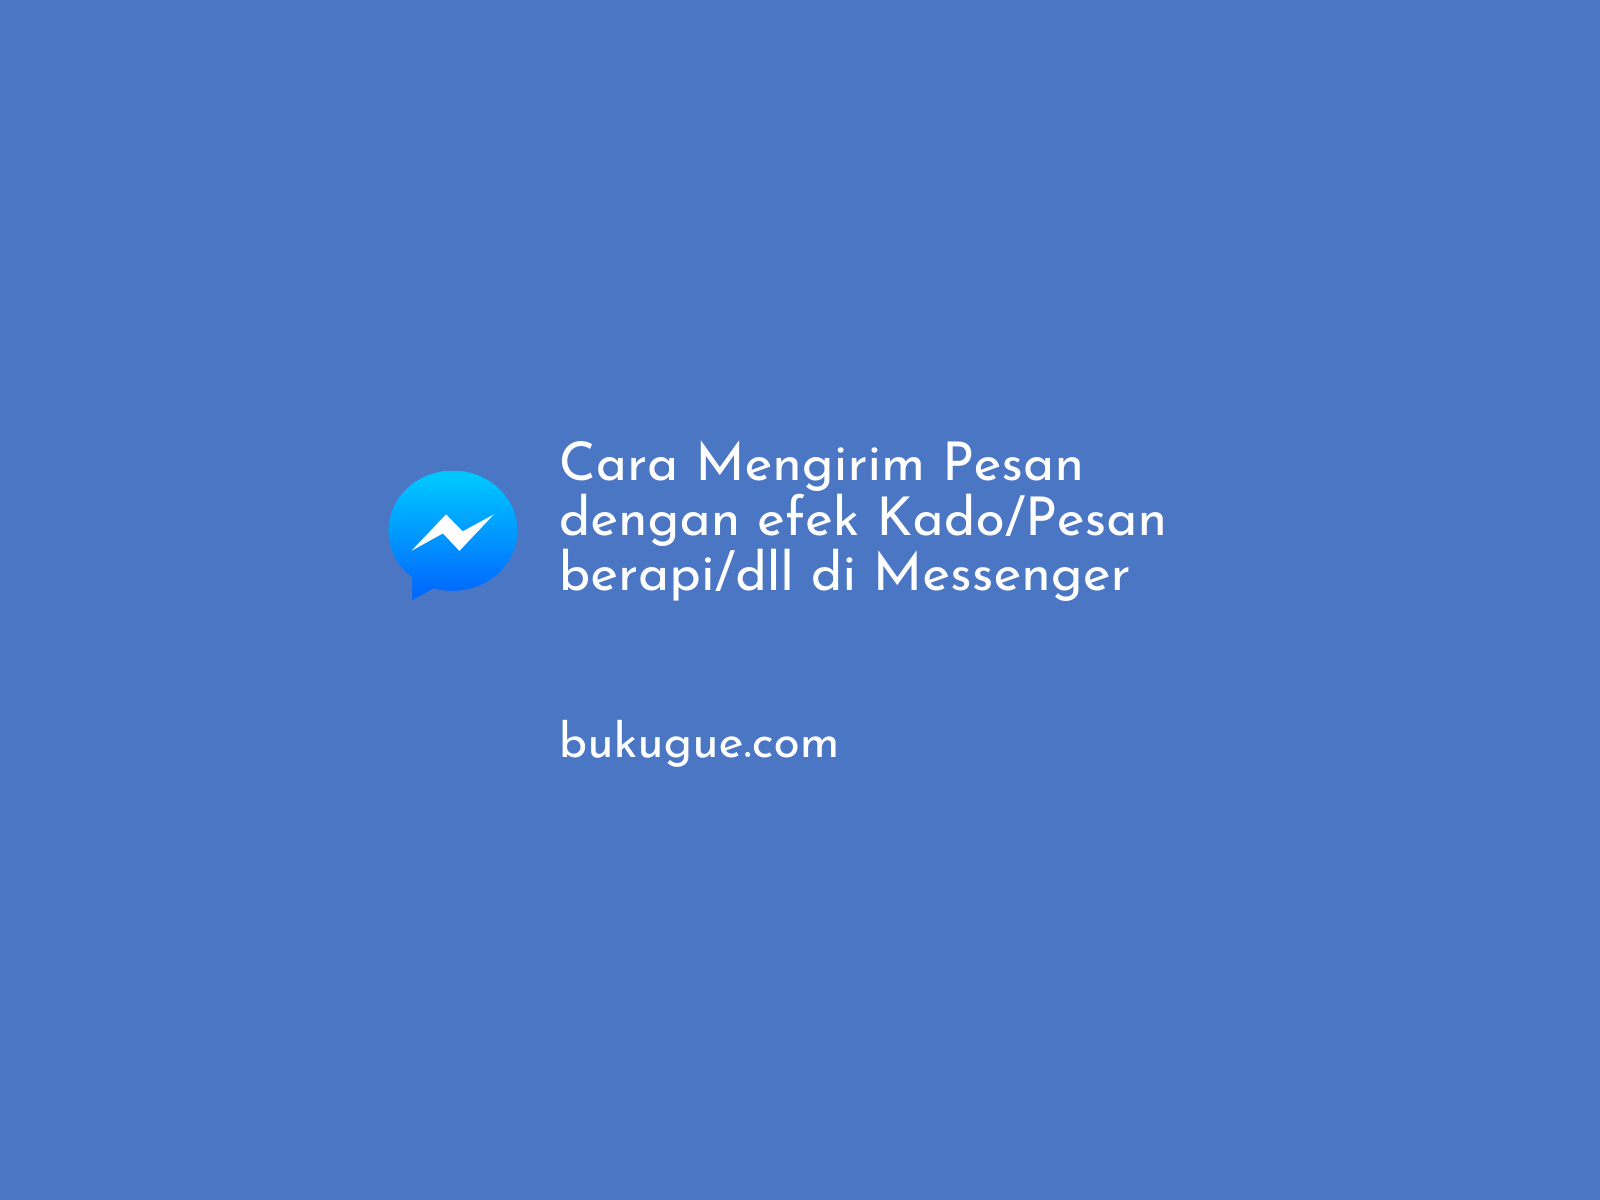 Cara mengirim pesan dengan efek (Kado/Pesan berapi/dll) di Messenger